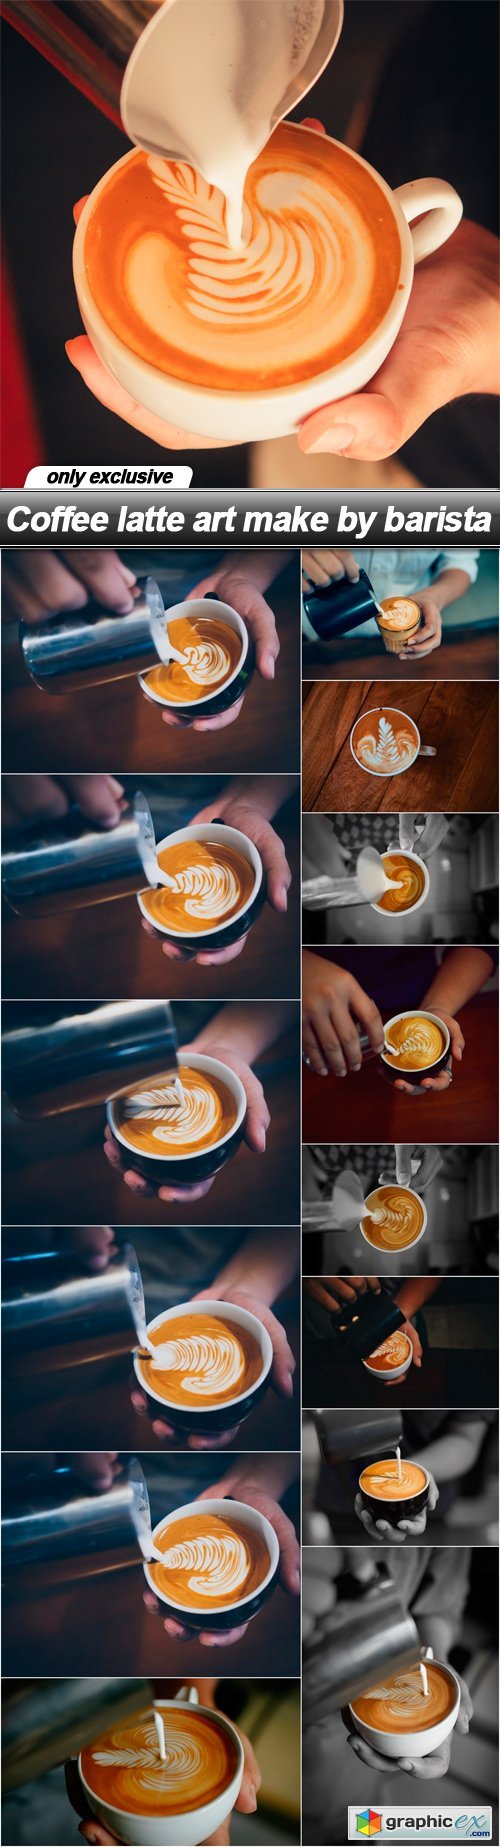 Coffee latte art make by barista - 15 UHQ JPEG